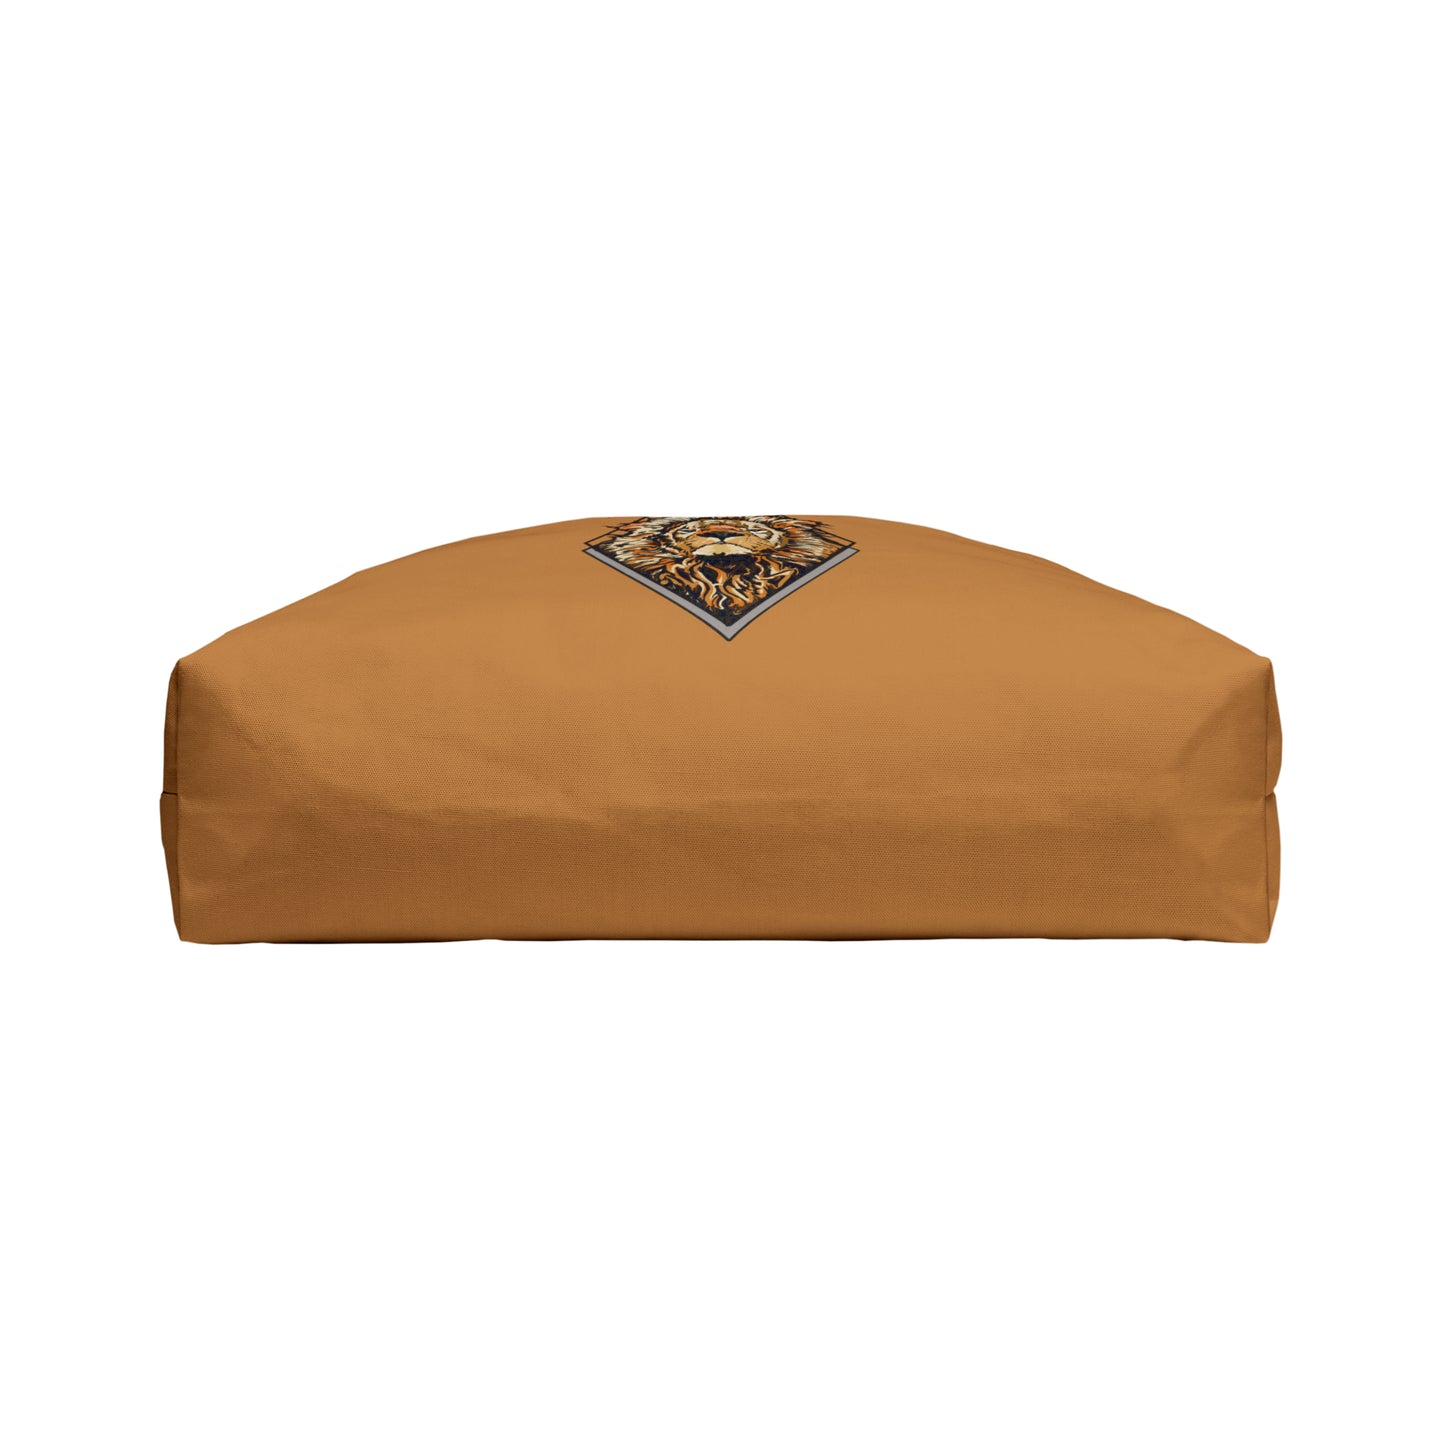 Roar in Style: Lion King Weekender Bag (Light Brown)